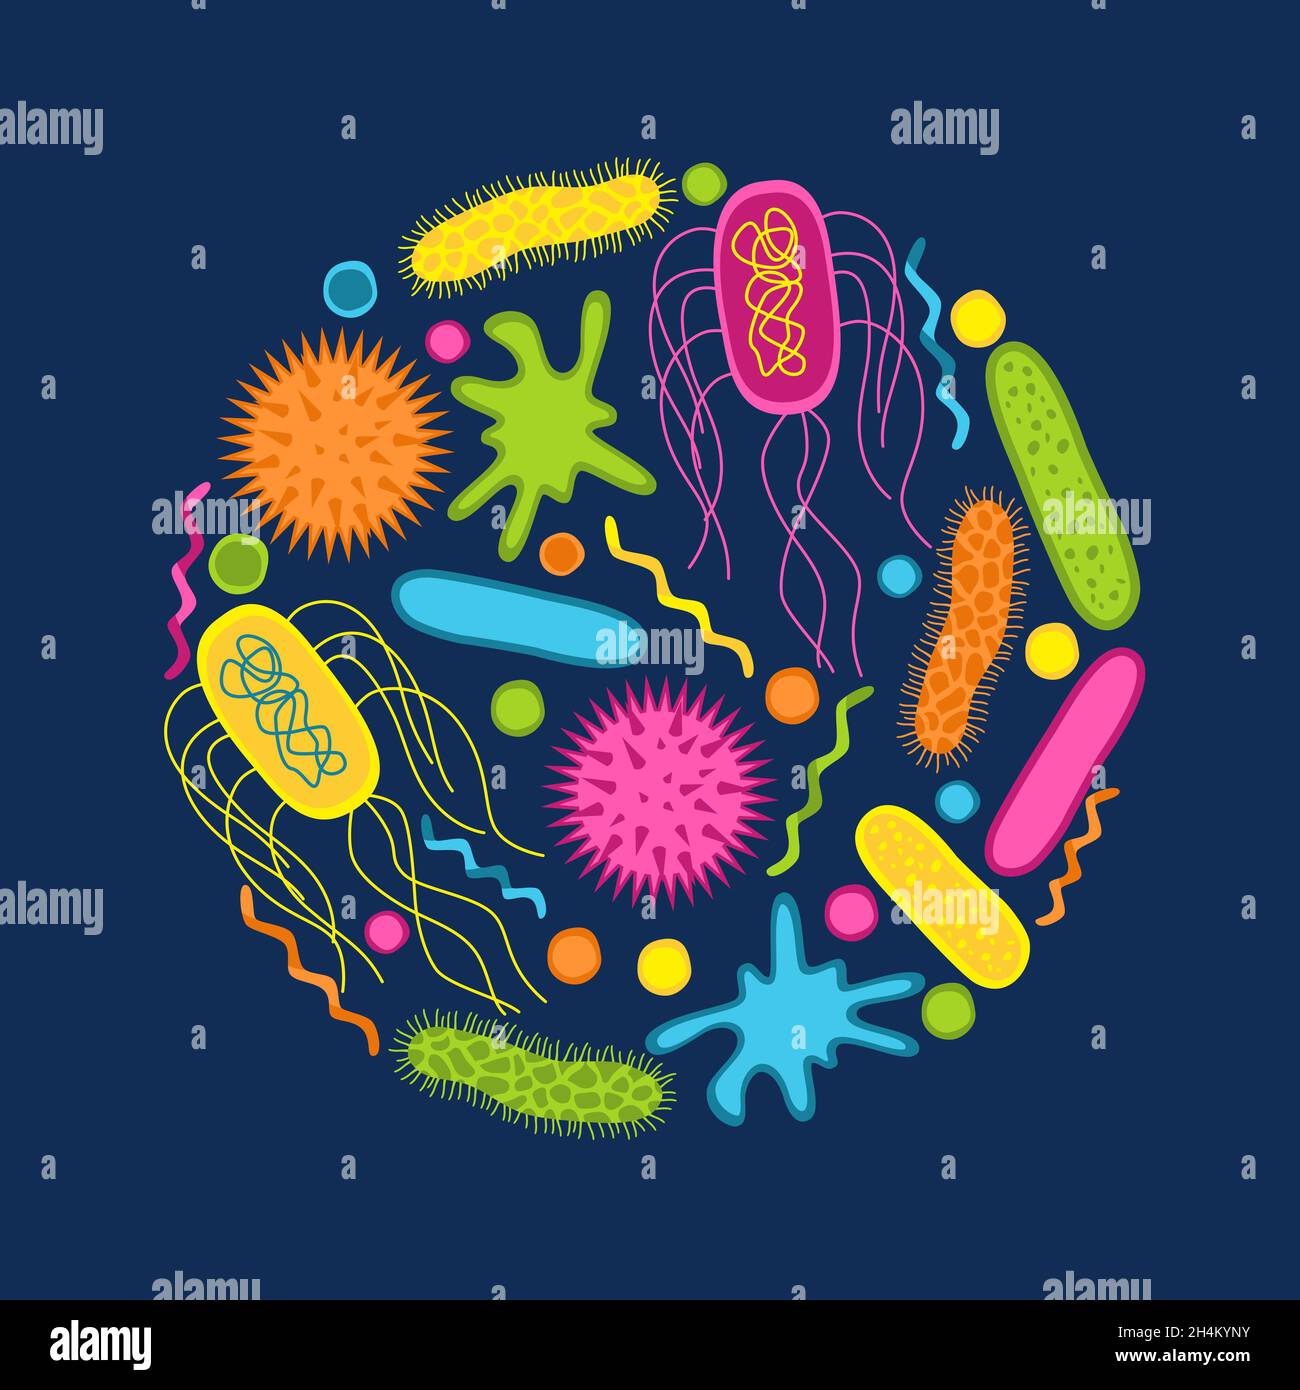 Bunte Symbole für Keime und Bakterien werden isoliert auf blauem Hintergrund gesetzt. Form der Bakterienzelle: cocci, Bazillen, Spirilla. Vektorgrafik. Stock Vektor